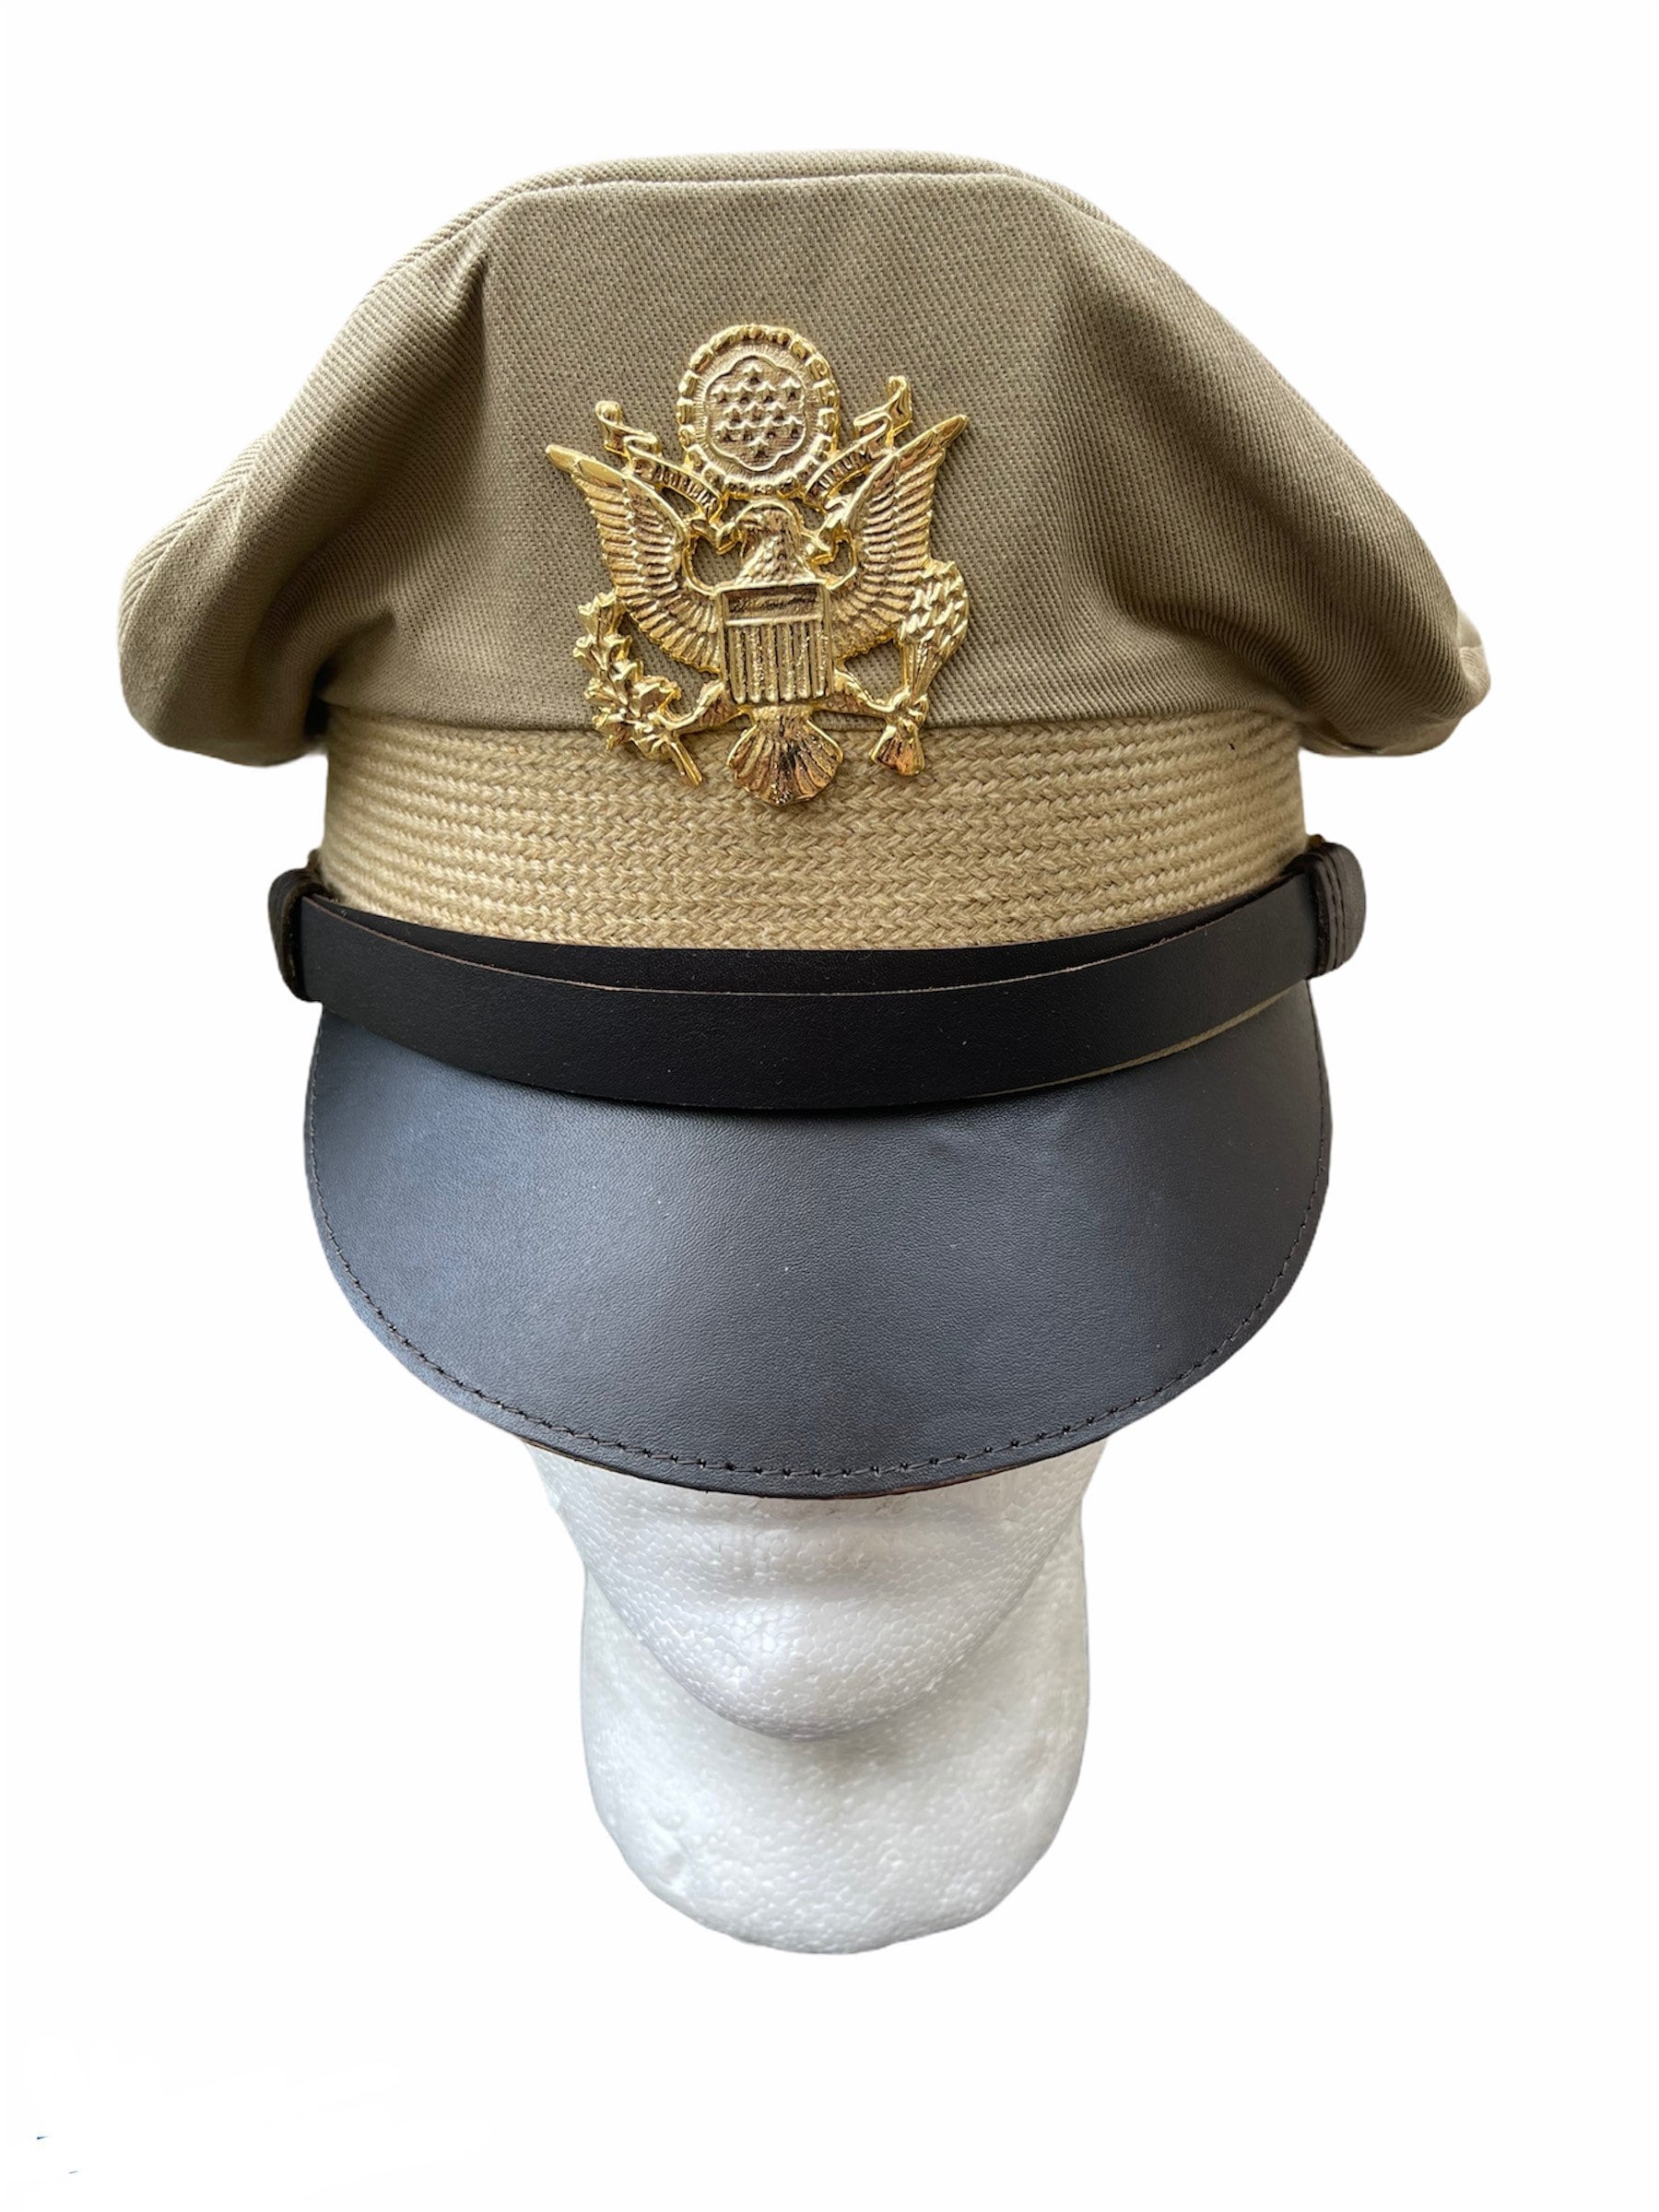 Gr.XXL 63/64 US ARMY WW2 Officer Crusher cap VISOR HAT Schirmmütze Offizier 